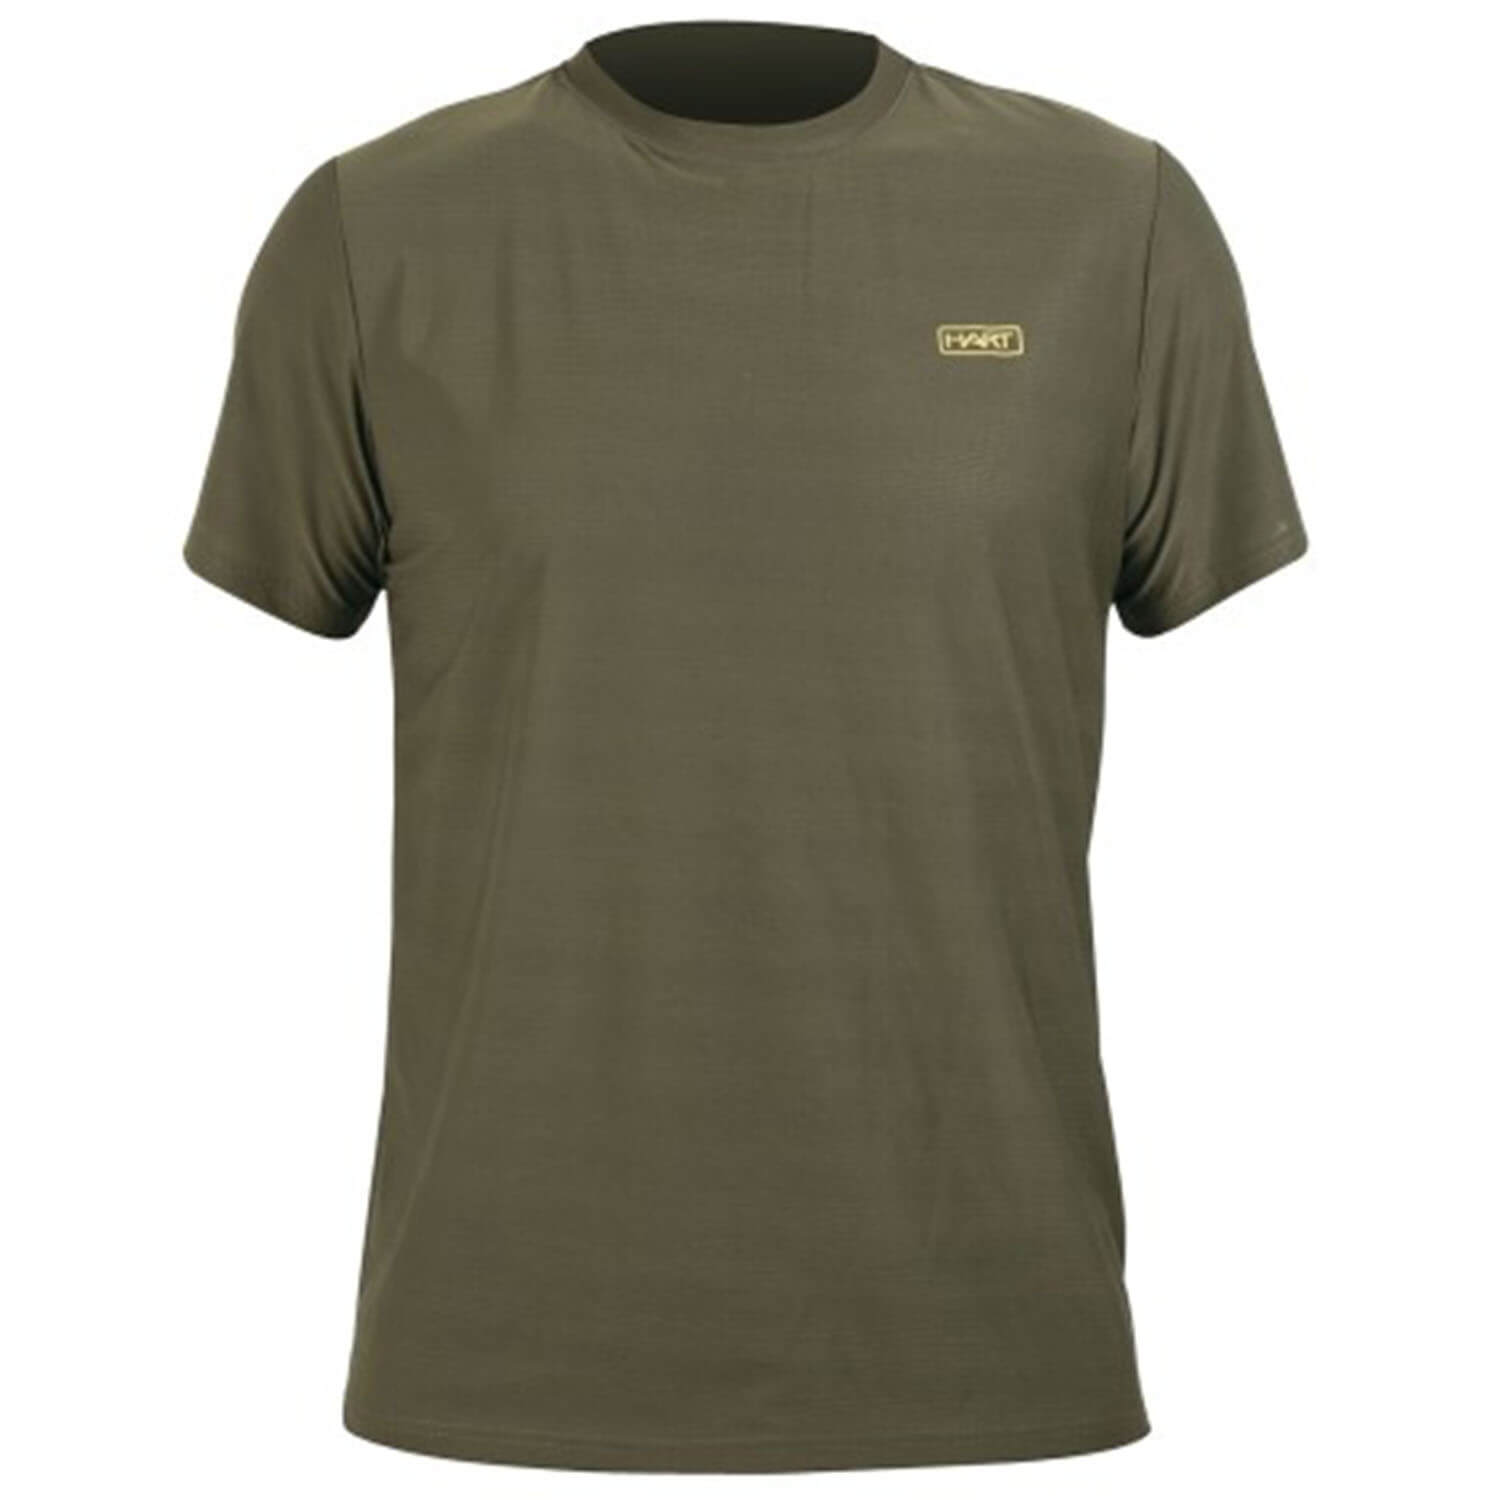  Hart Ural-TS T-shirt (groen) - Zomer jachtkleding